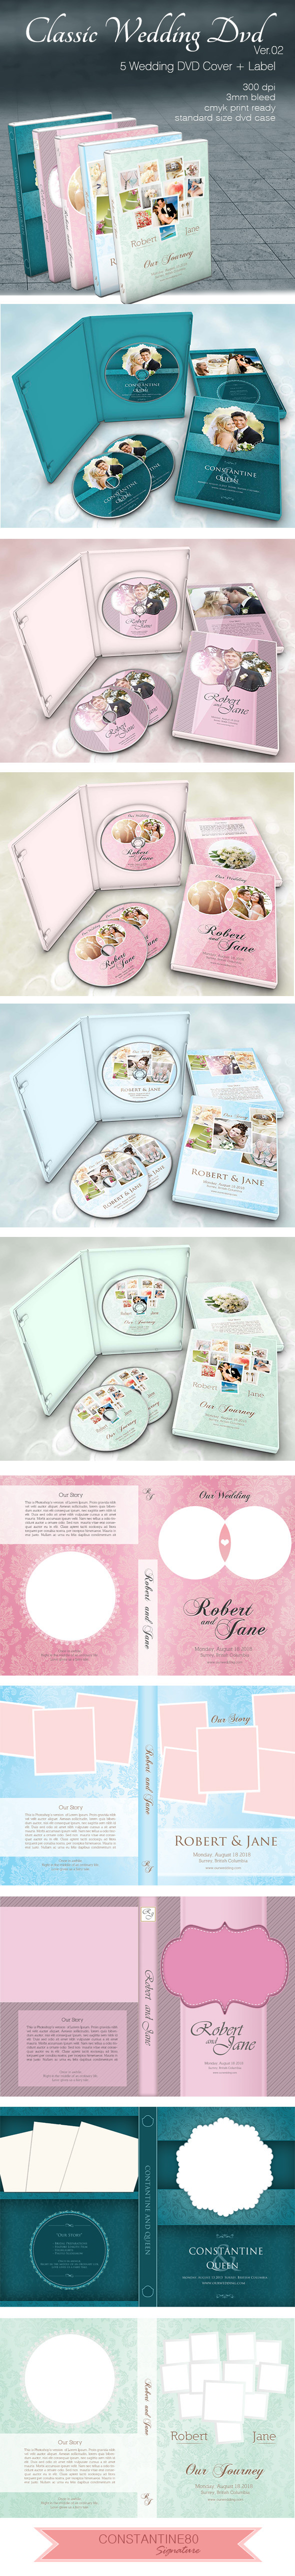 wedding DVD template